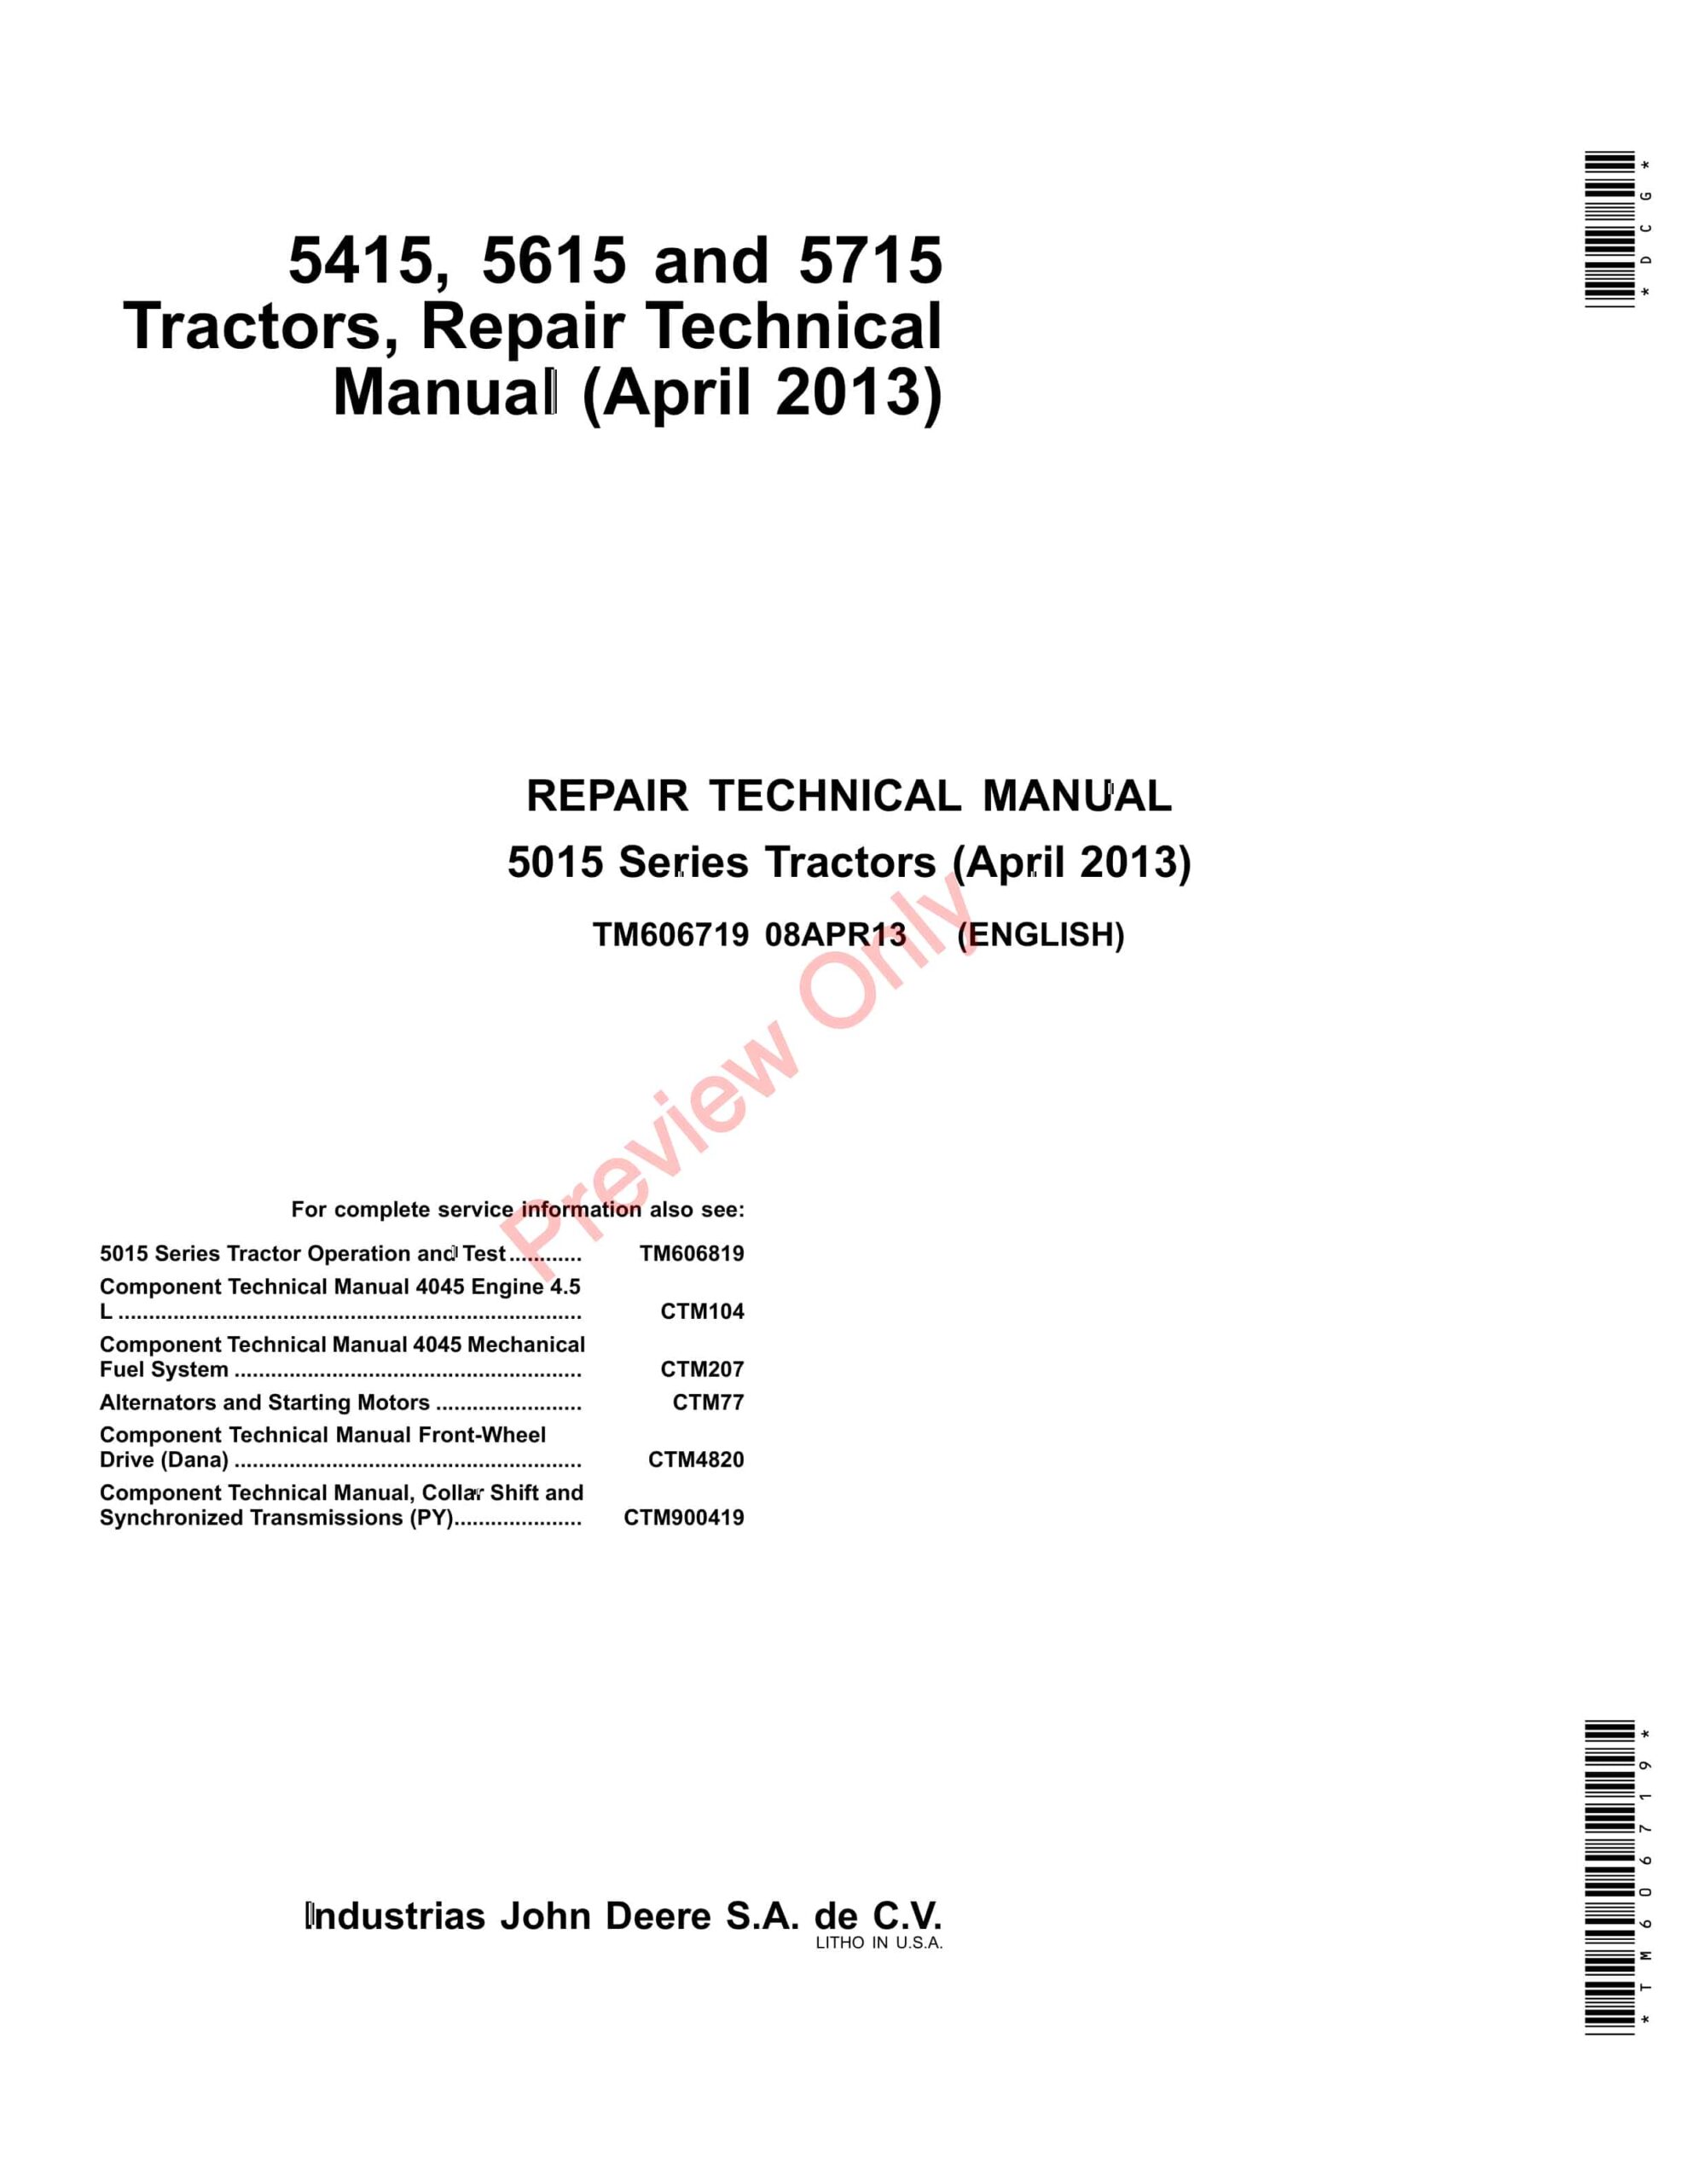 John Deere 5415, 5615 and 5715 Tractors Technical Manual TM606719 08APR13-1